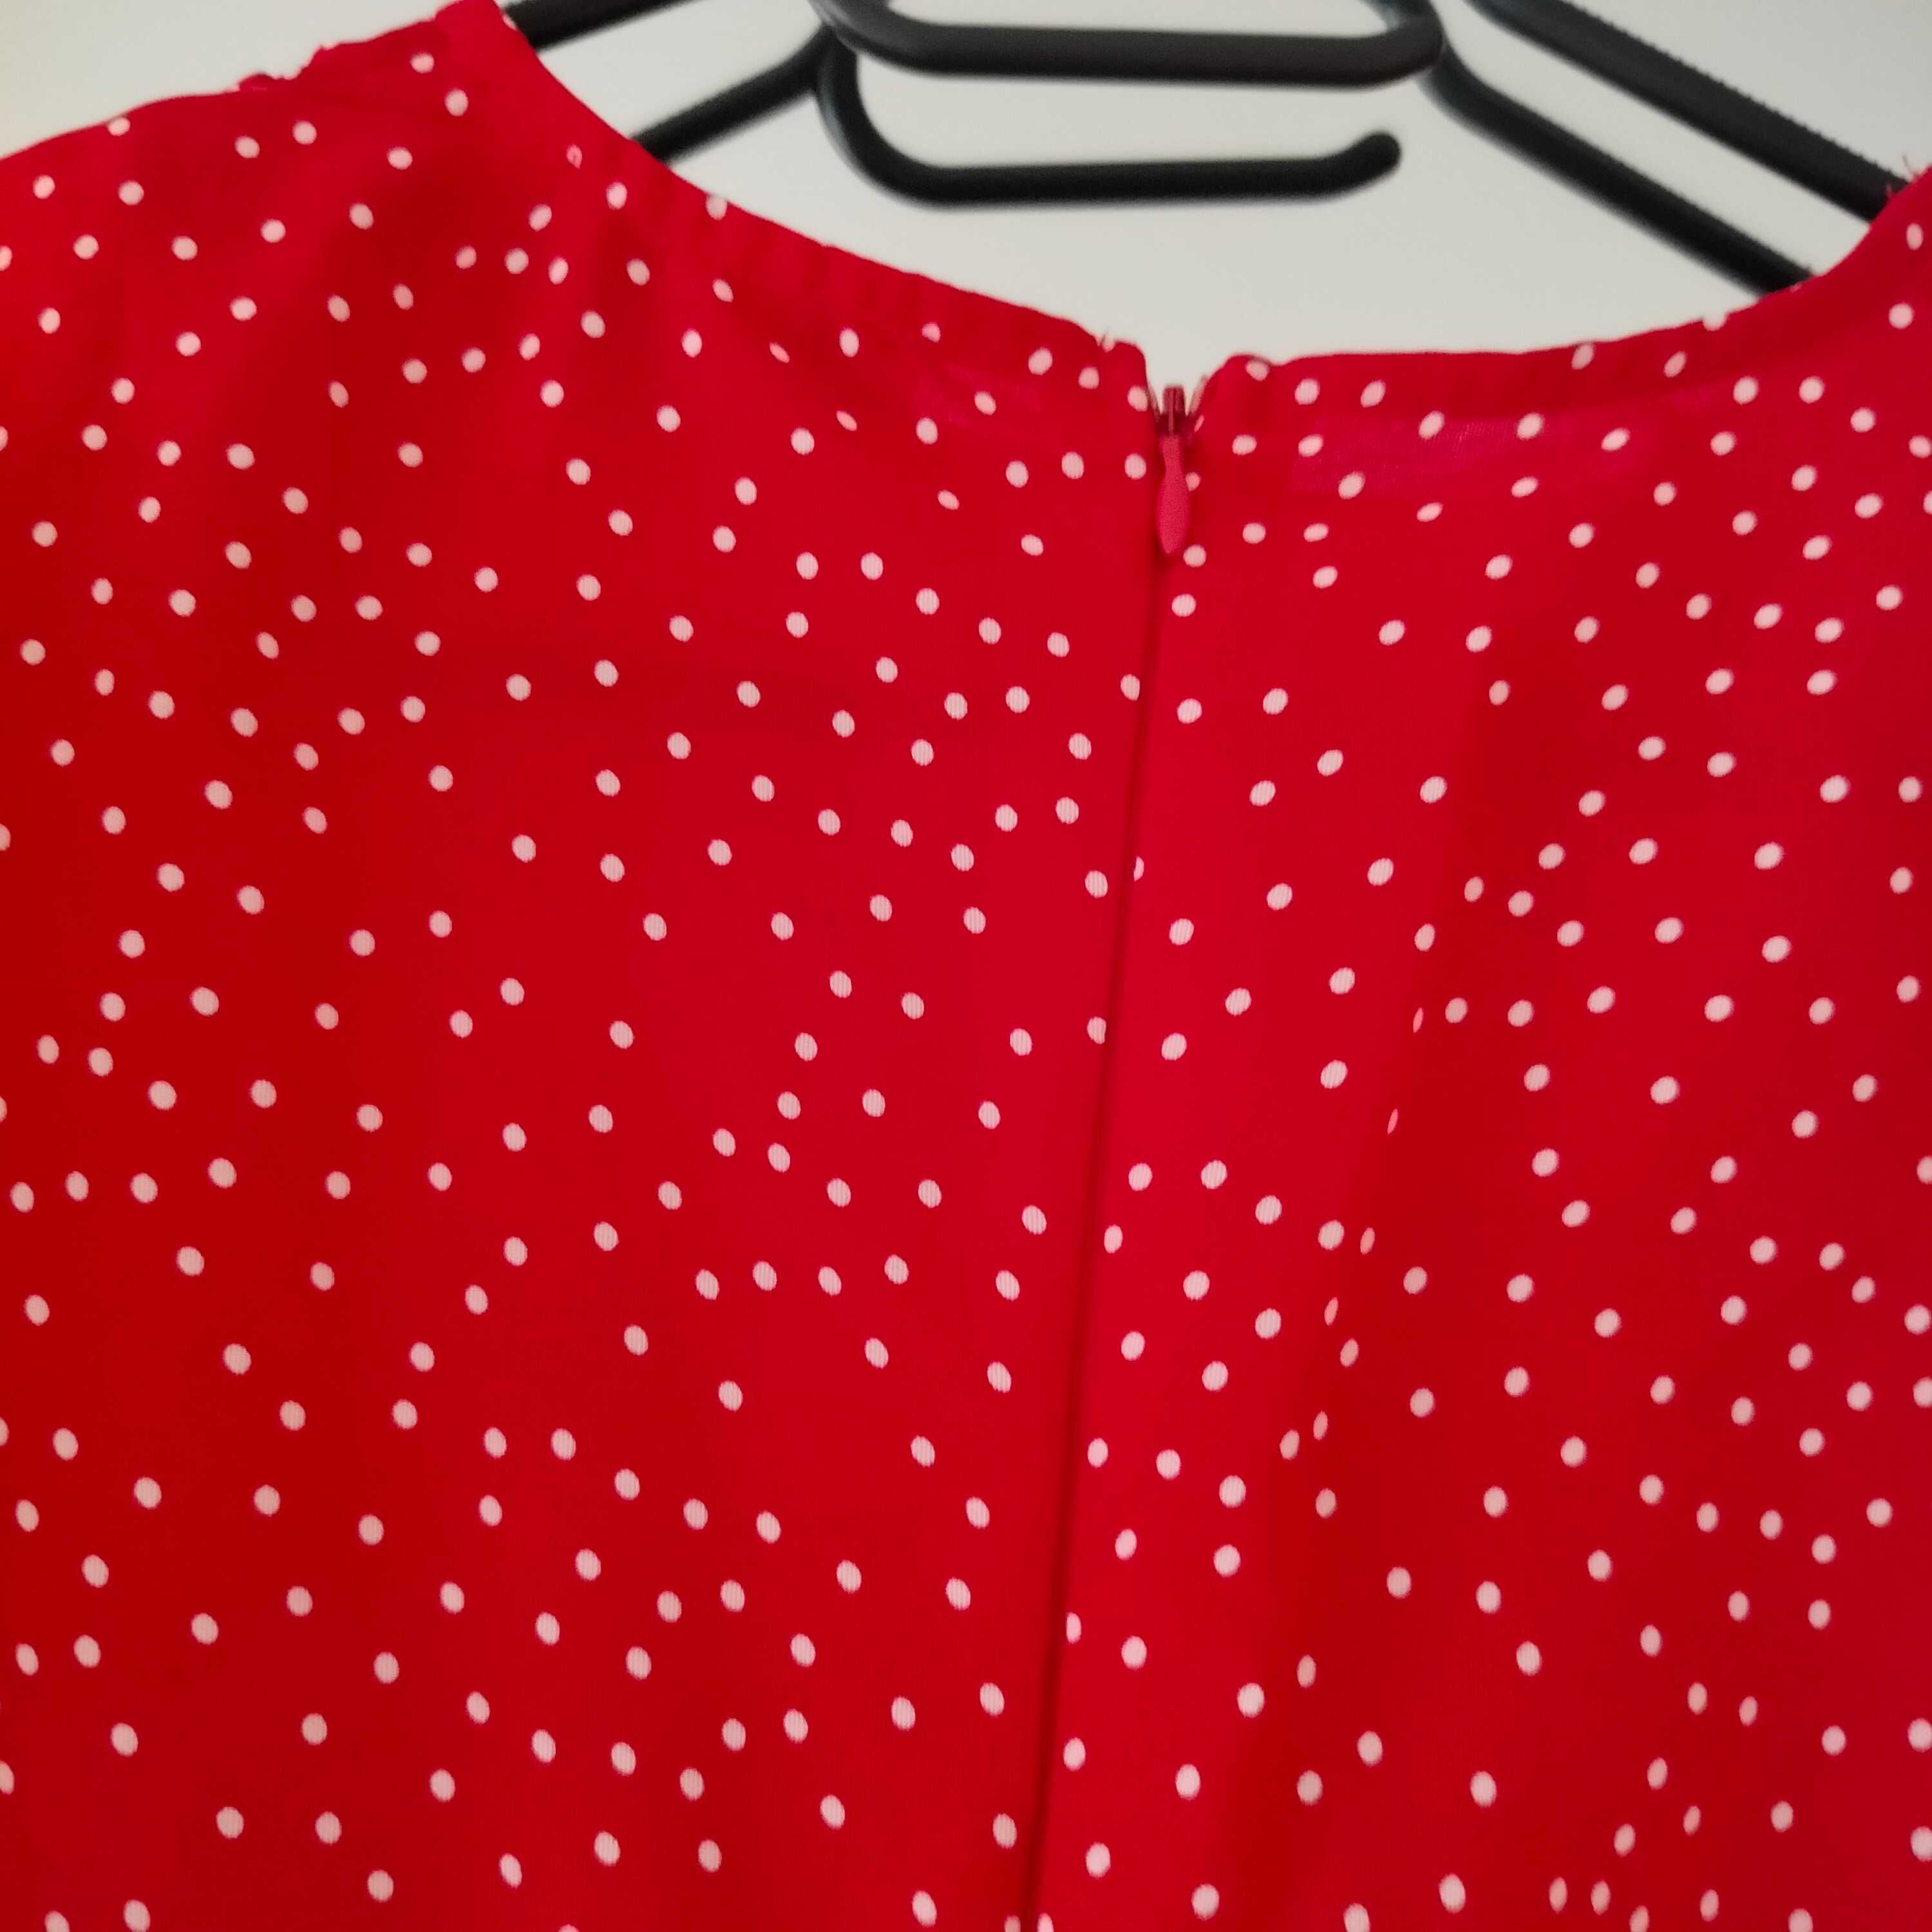 Damska długa sukienka czerwona w białe kropki grochy L 40